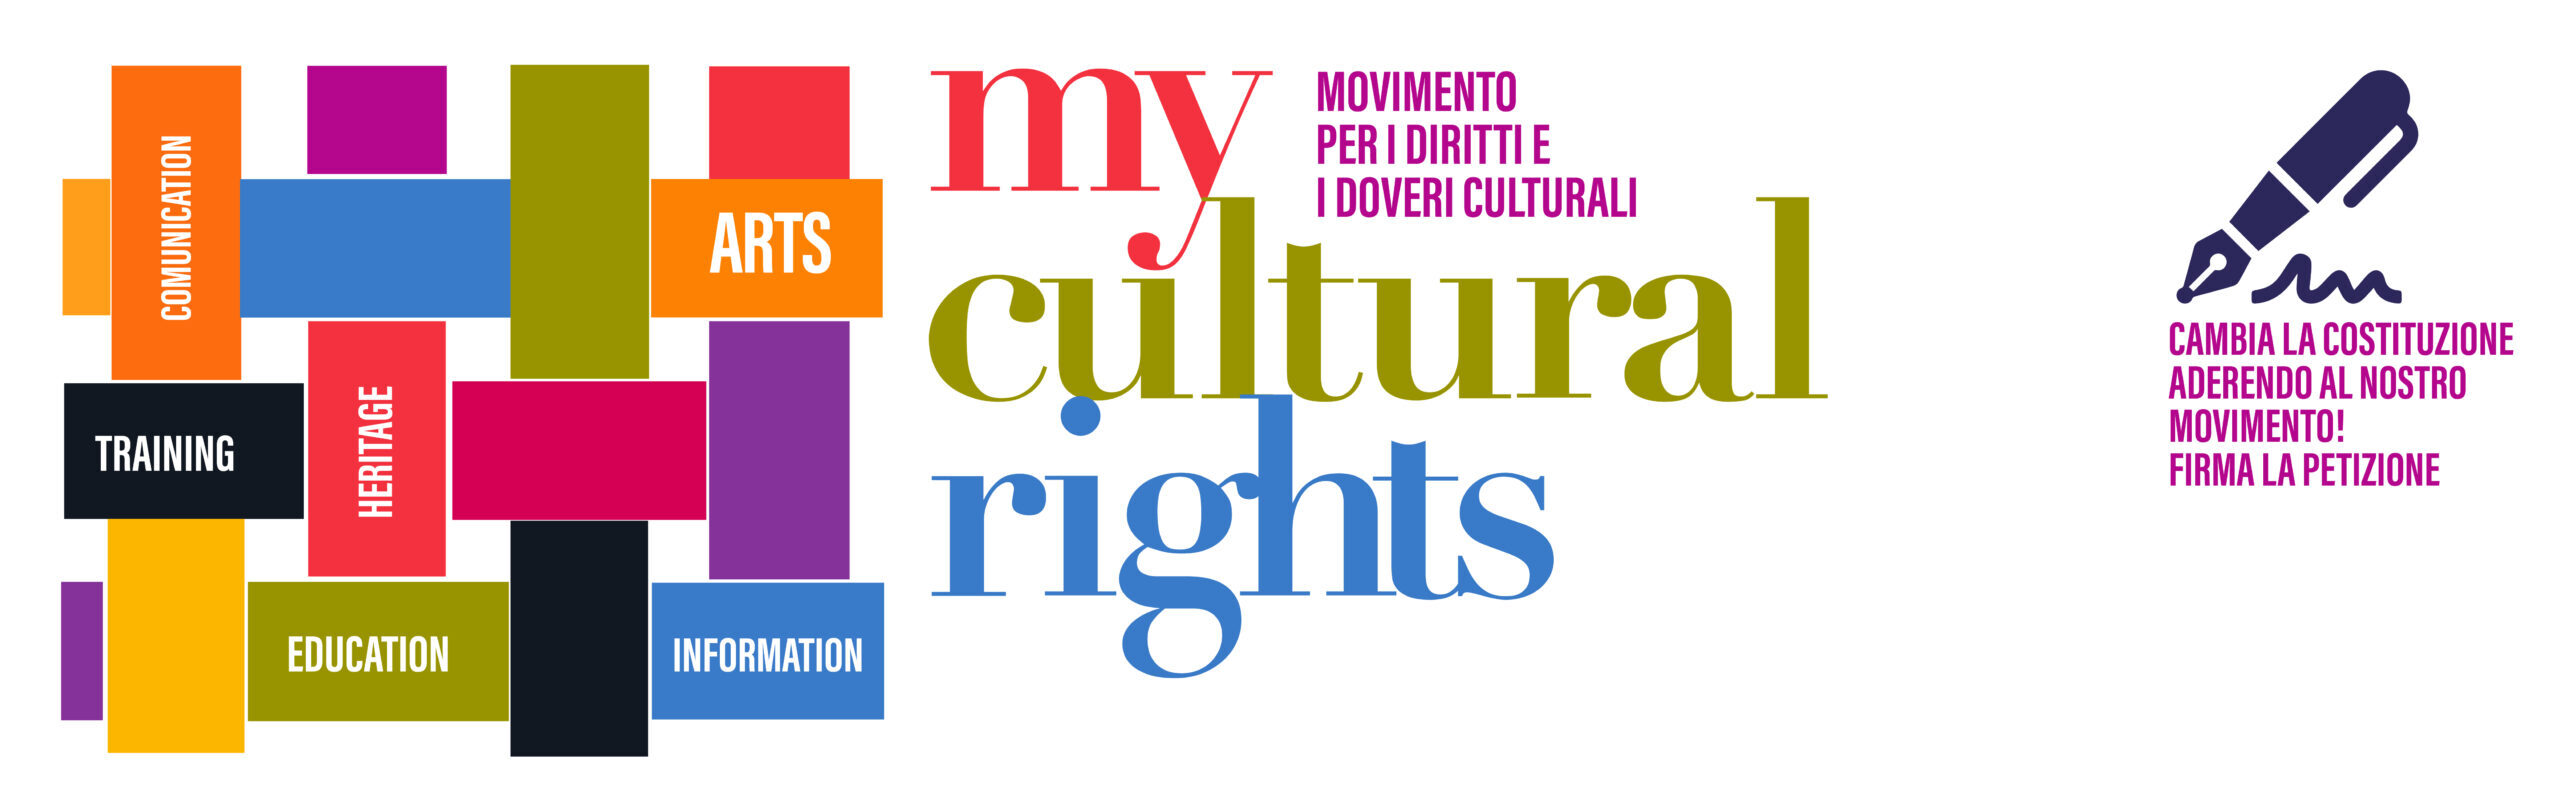 Movimento per i diritti e i doveri culturali